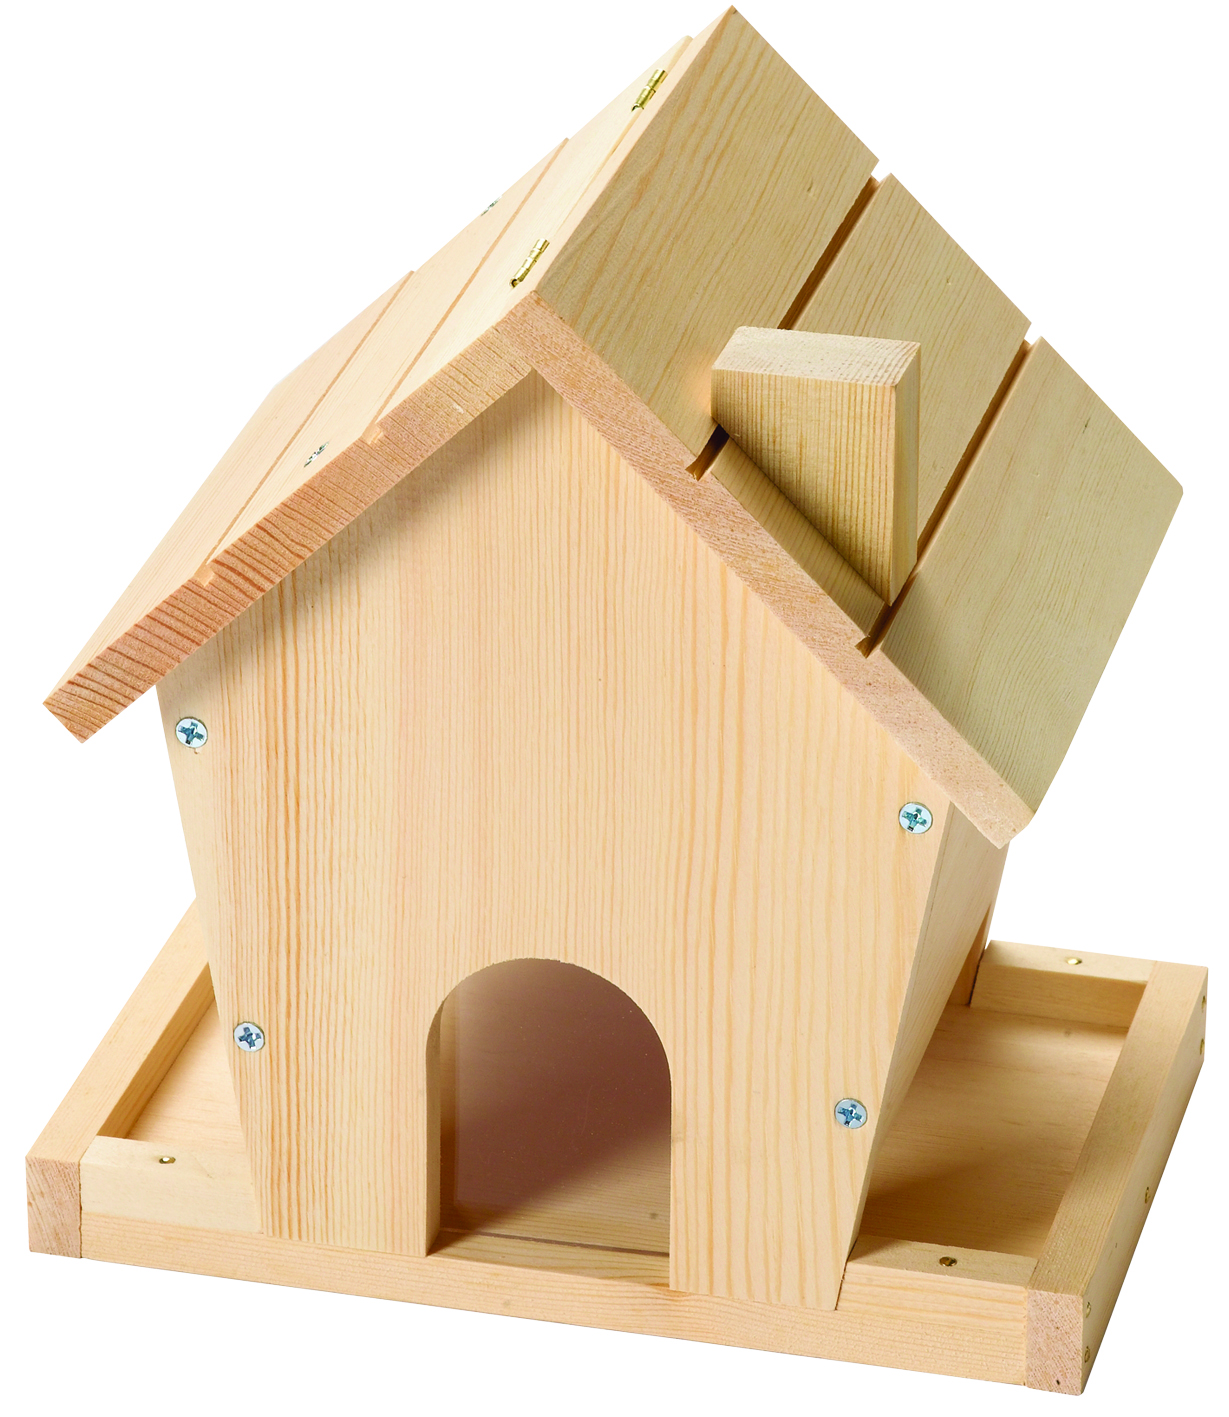 Wooden Bird House Kits